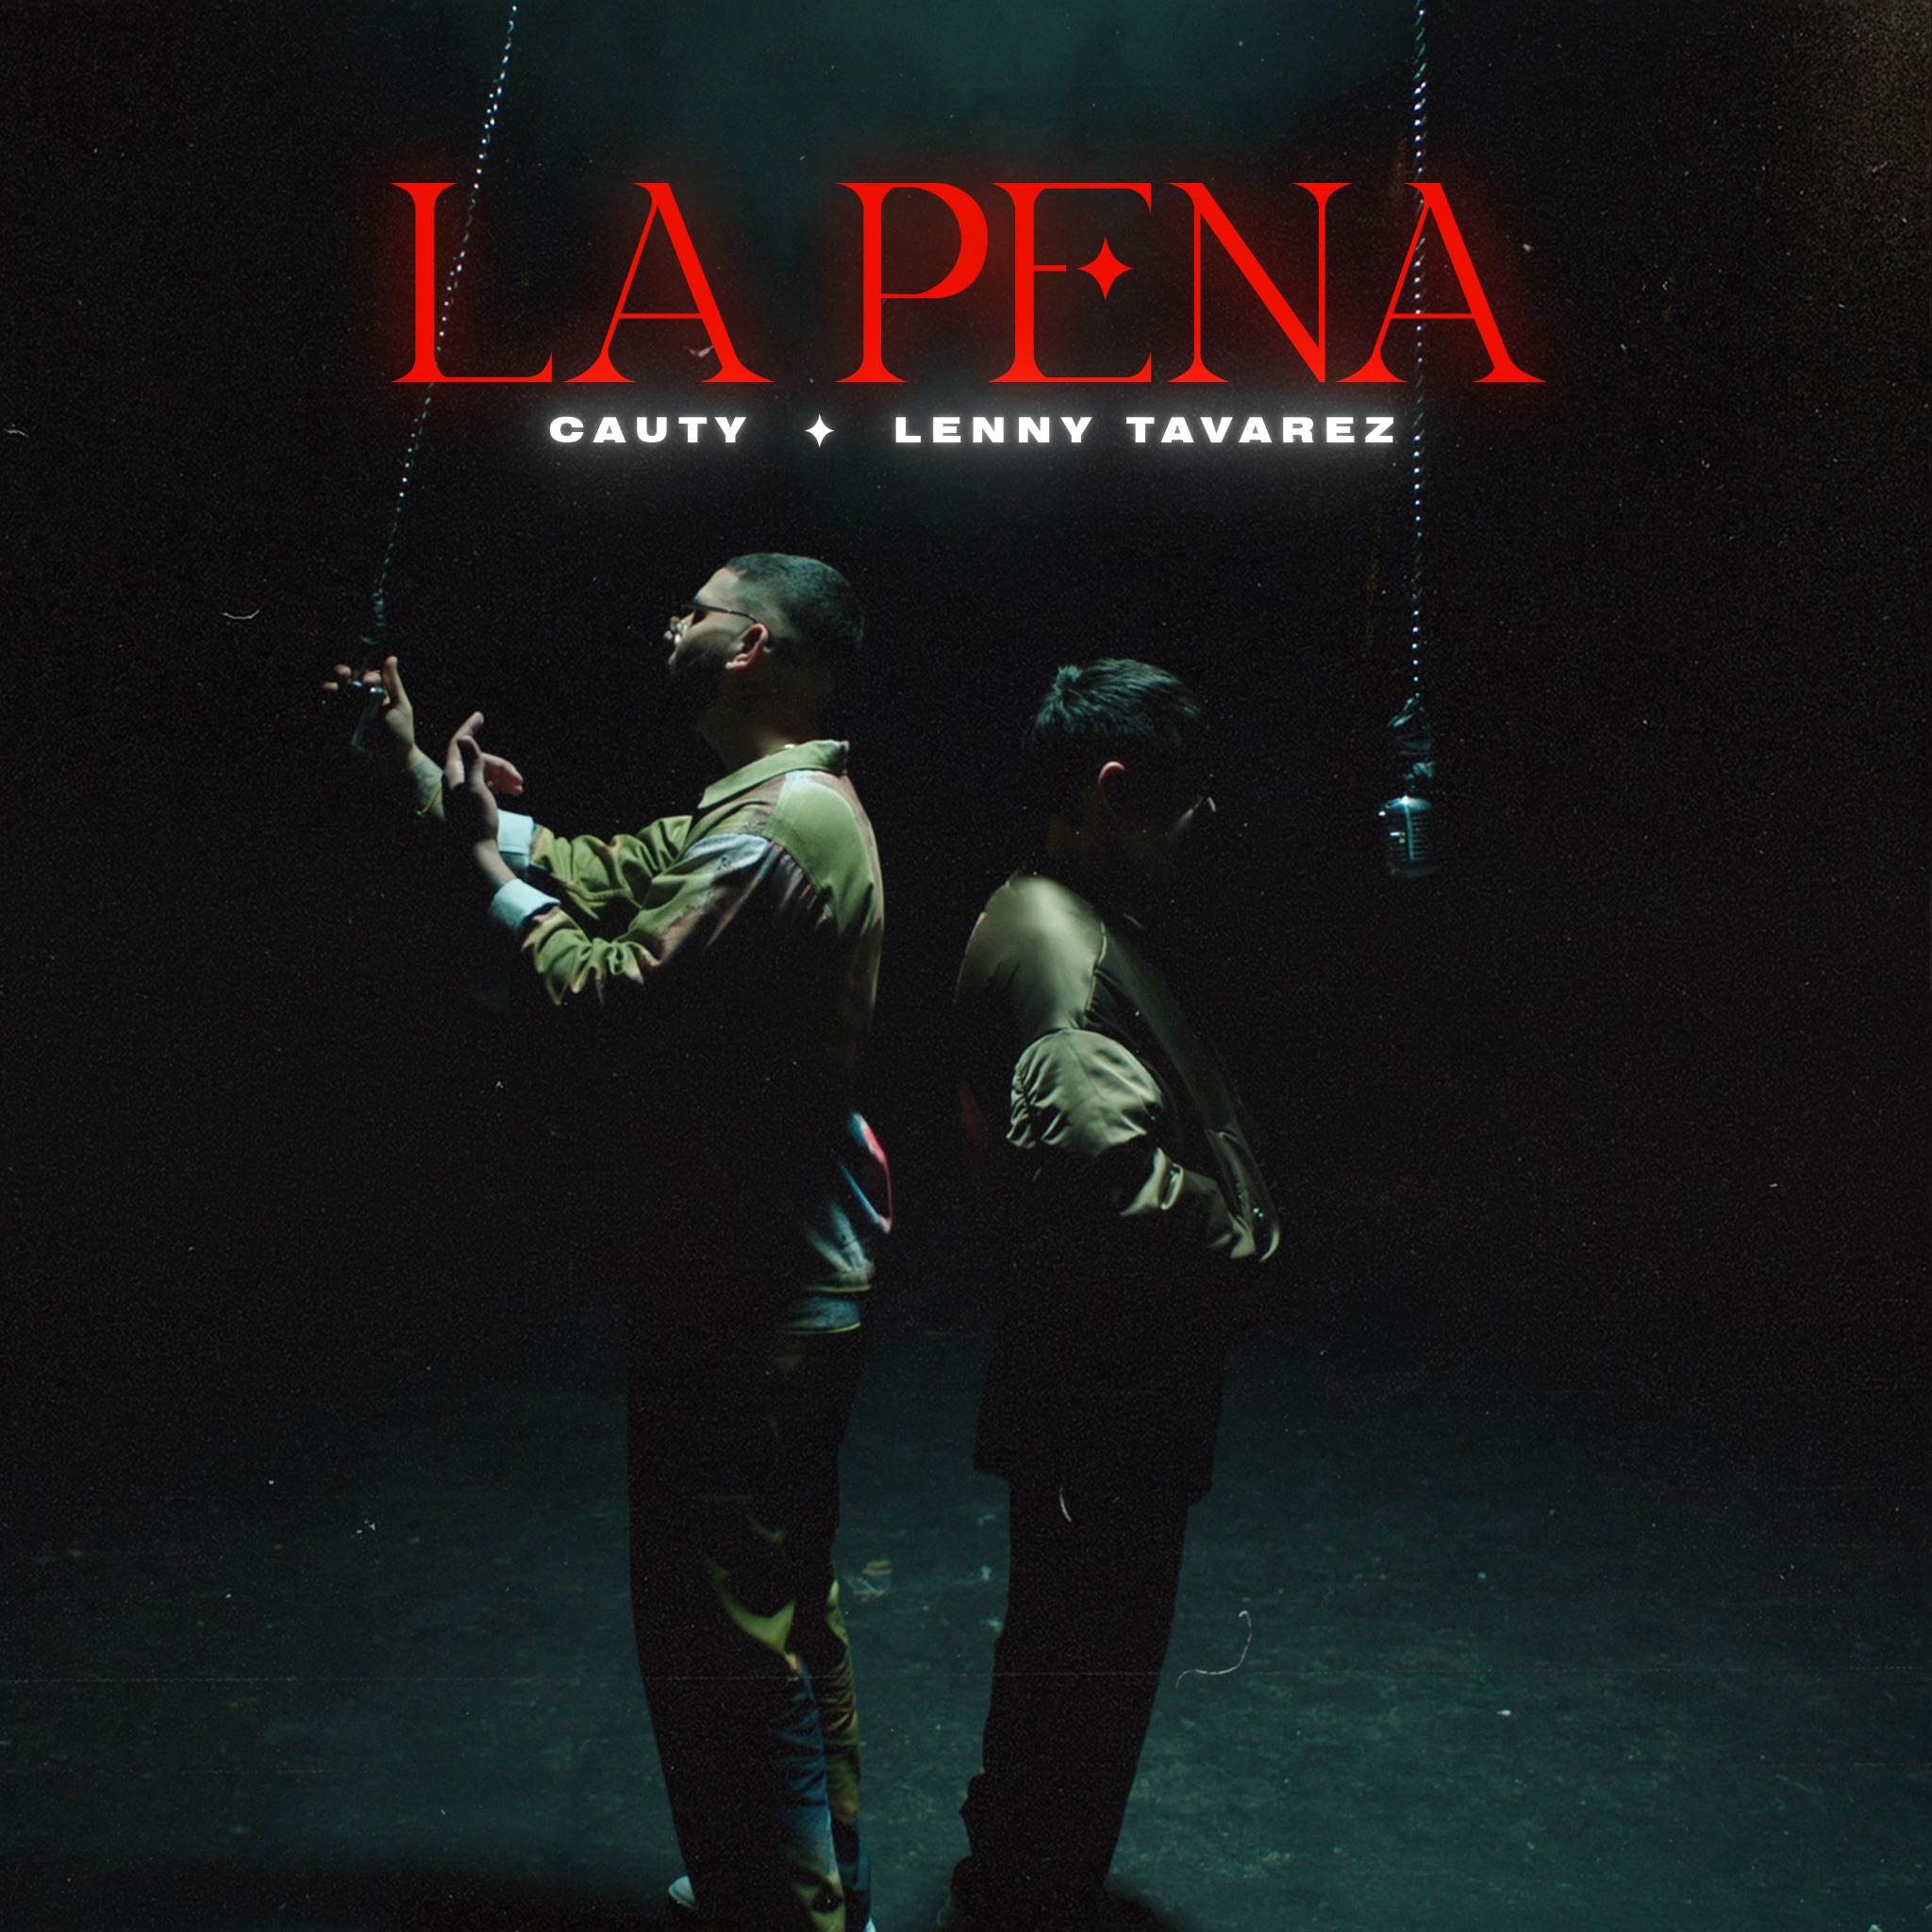 Cauty denuncia relaciones tóxicas con nuevo sencillo “La Pena” con Lenny Tavárez